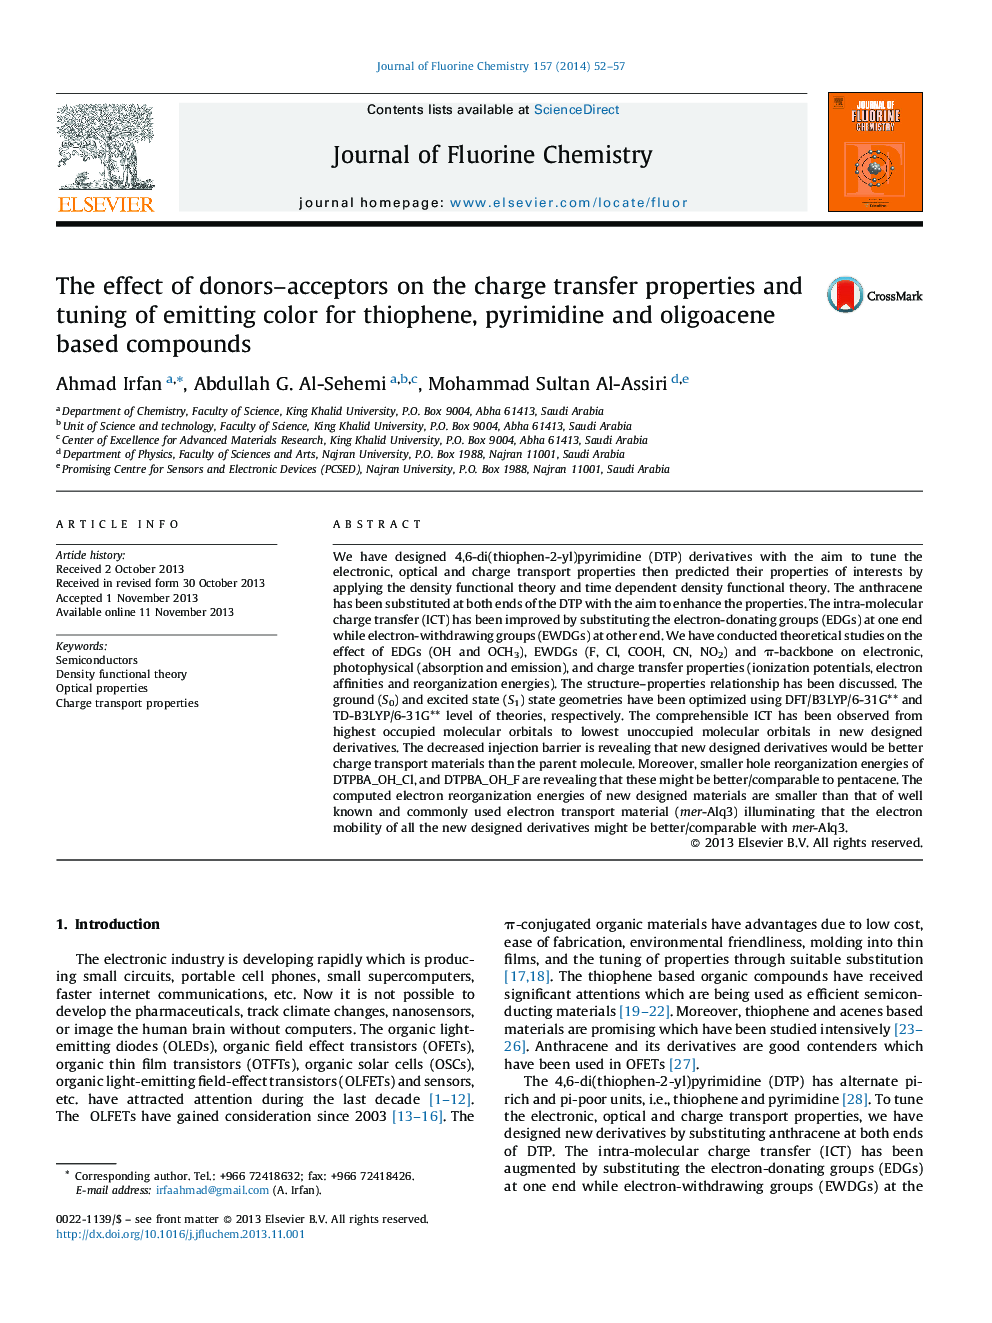 تأثیر پذیرنده های دونورزا بر خصوصیات انتقال شارژ و تنظیم رنگ انتشار برای ترکیبات تیوفن، پیریمیدین و الیگواسن 